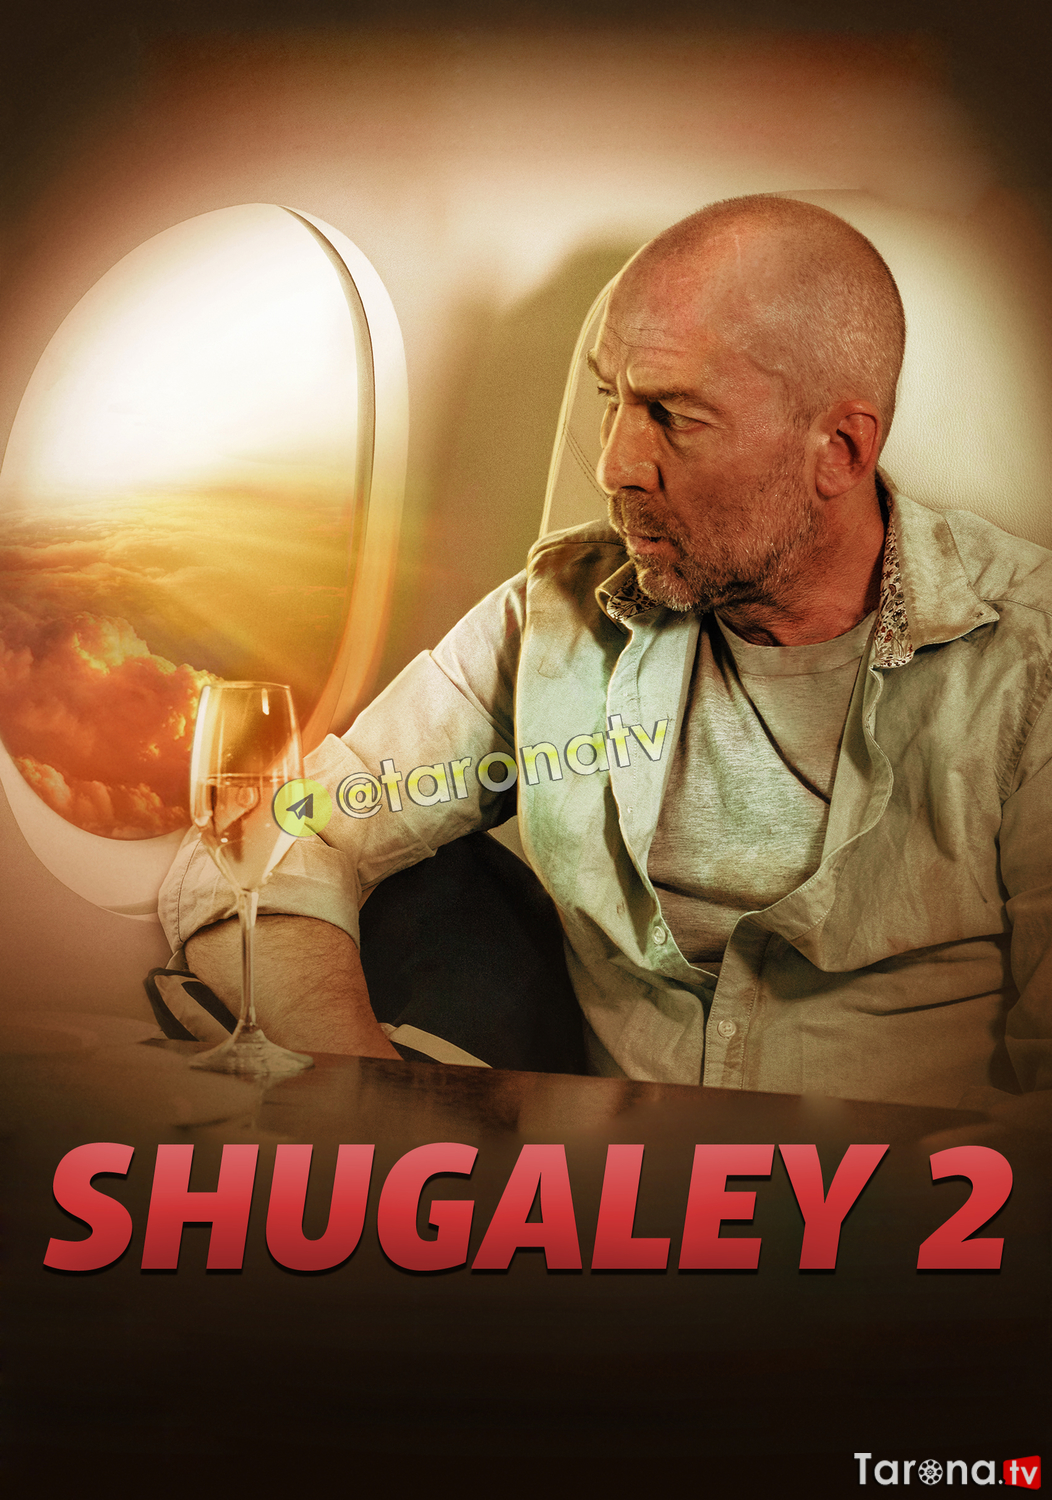 Shugaley 2 (Uzbek tilida, O'zbekcha tarjima, HD kino, jangari, sarguzasht) 2020